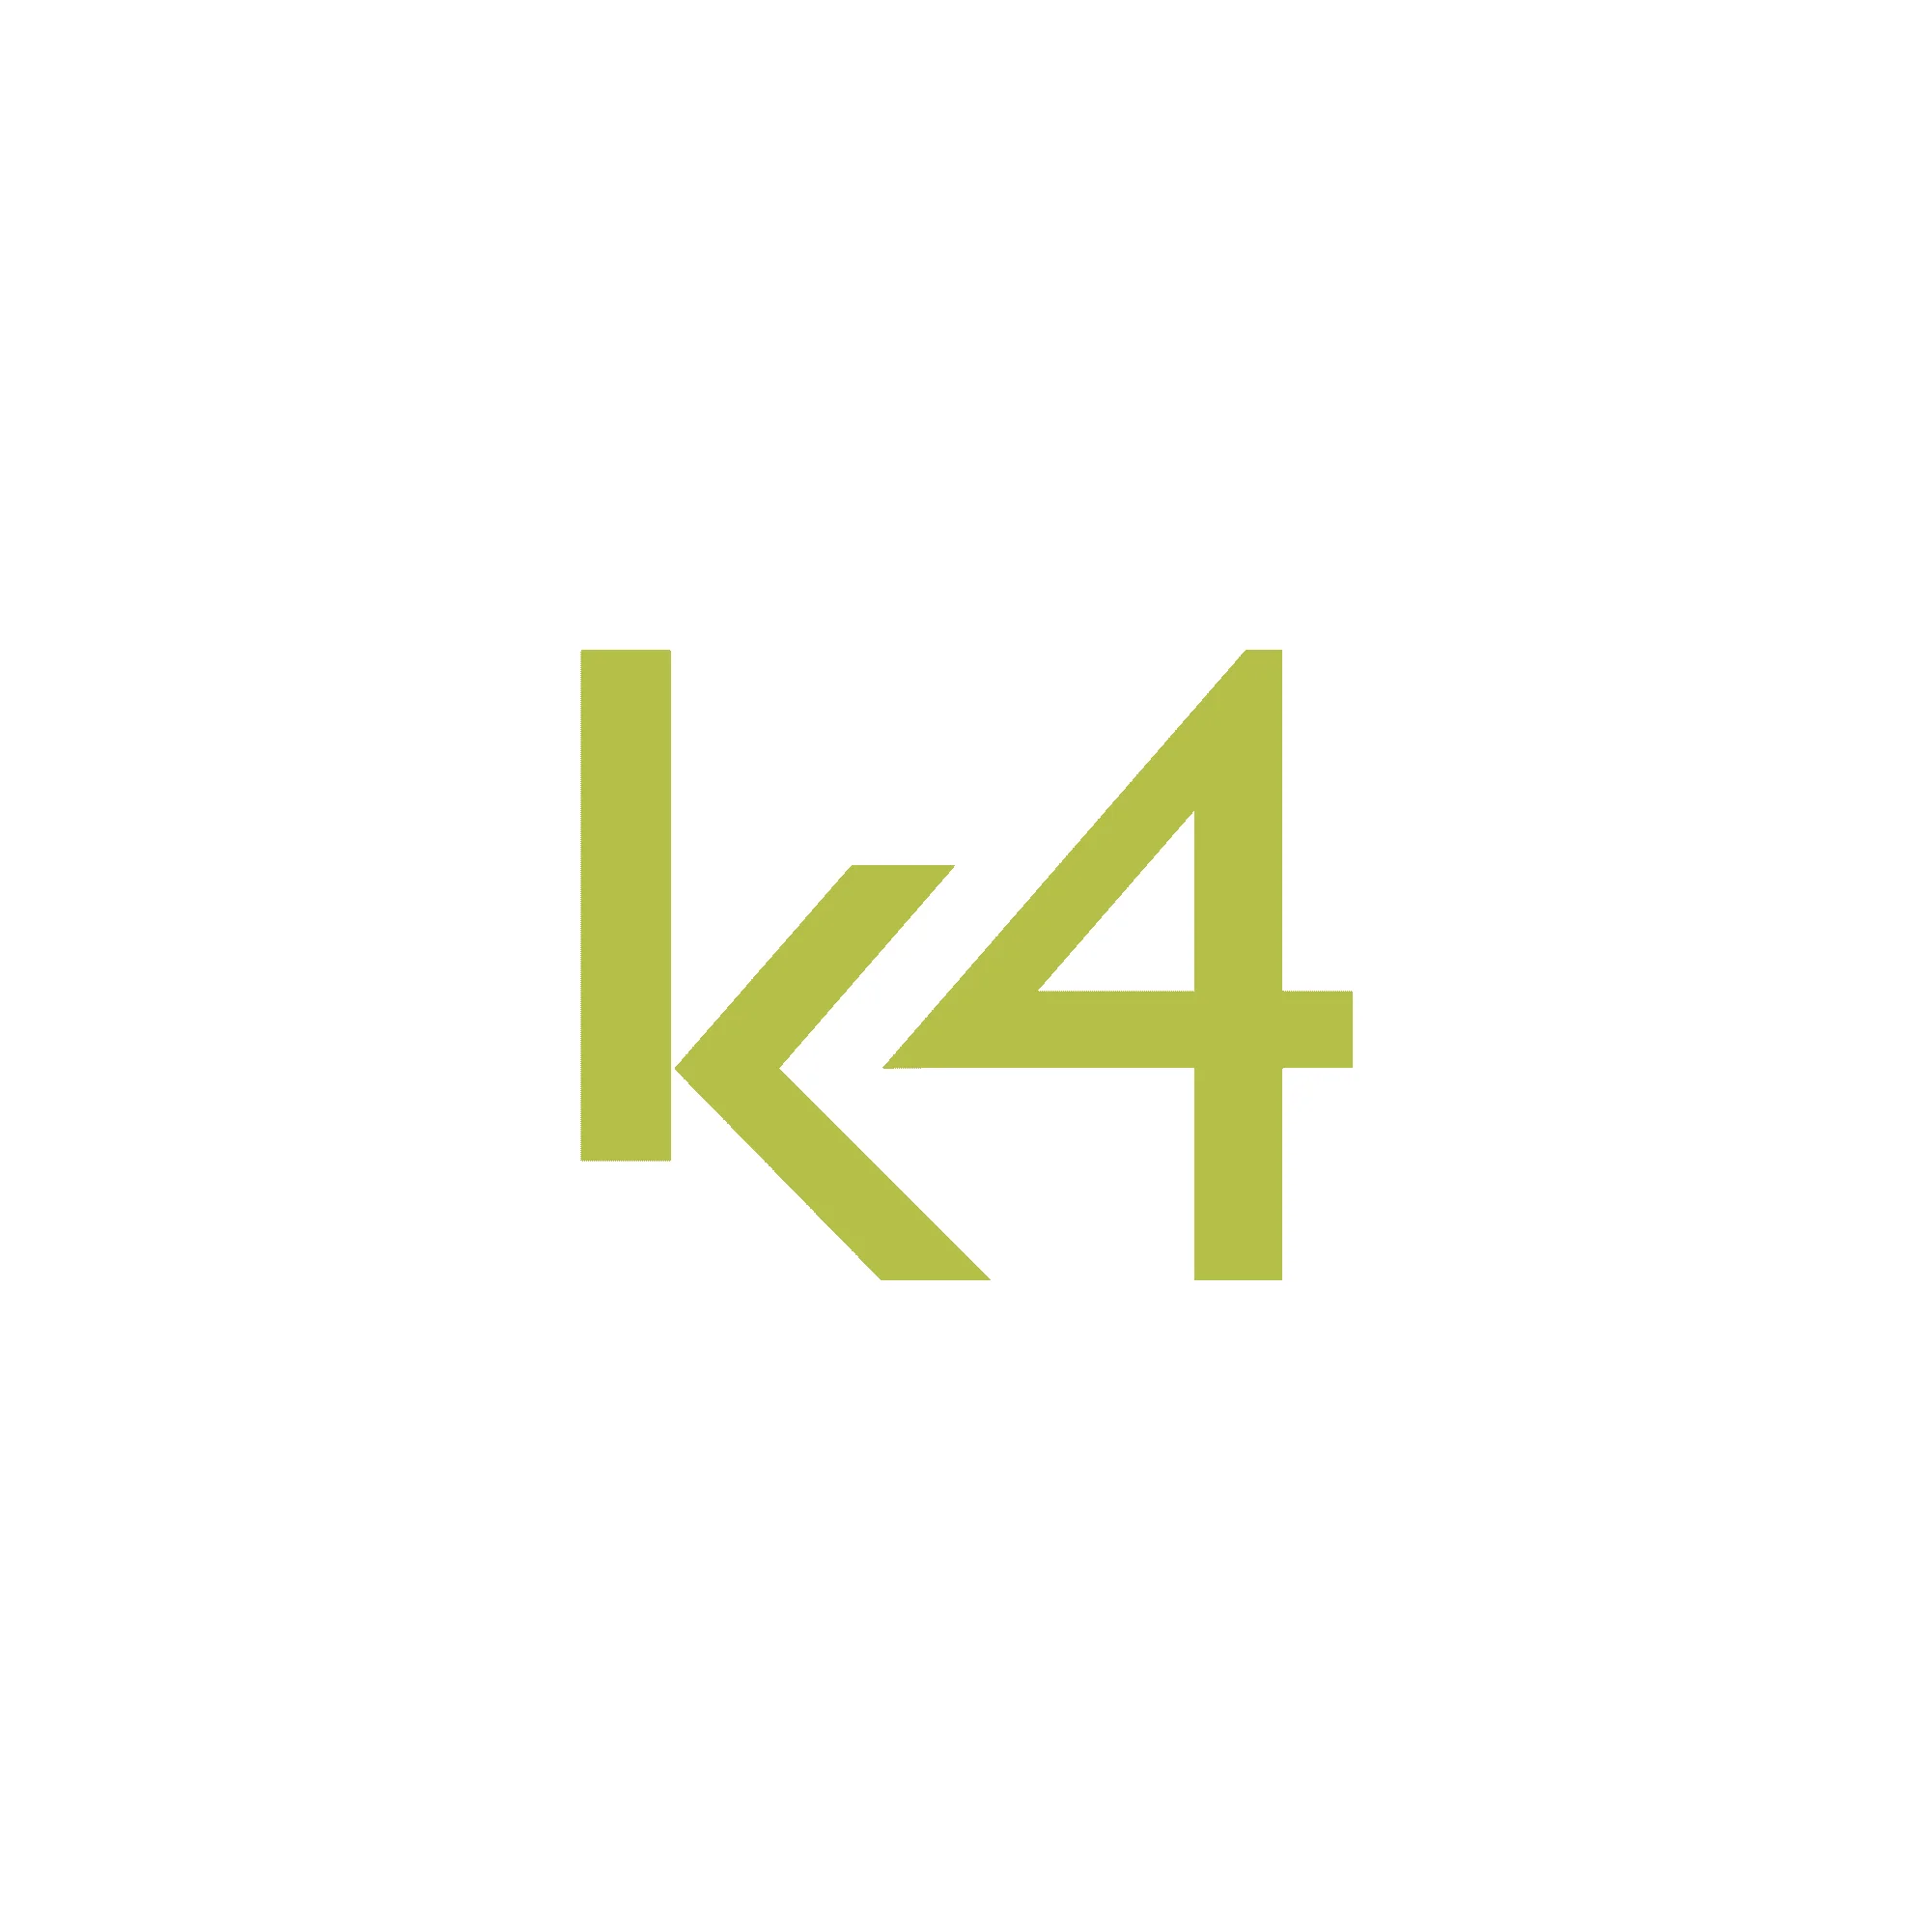 branding logo design K4